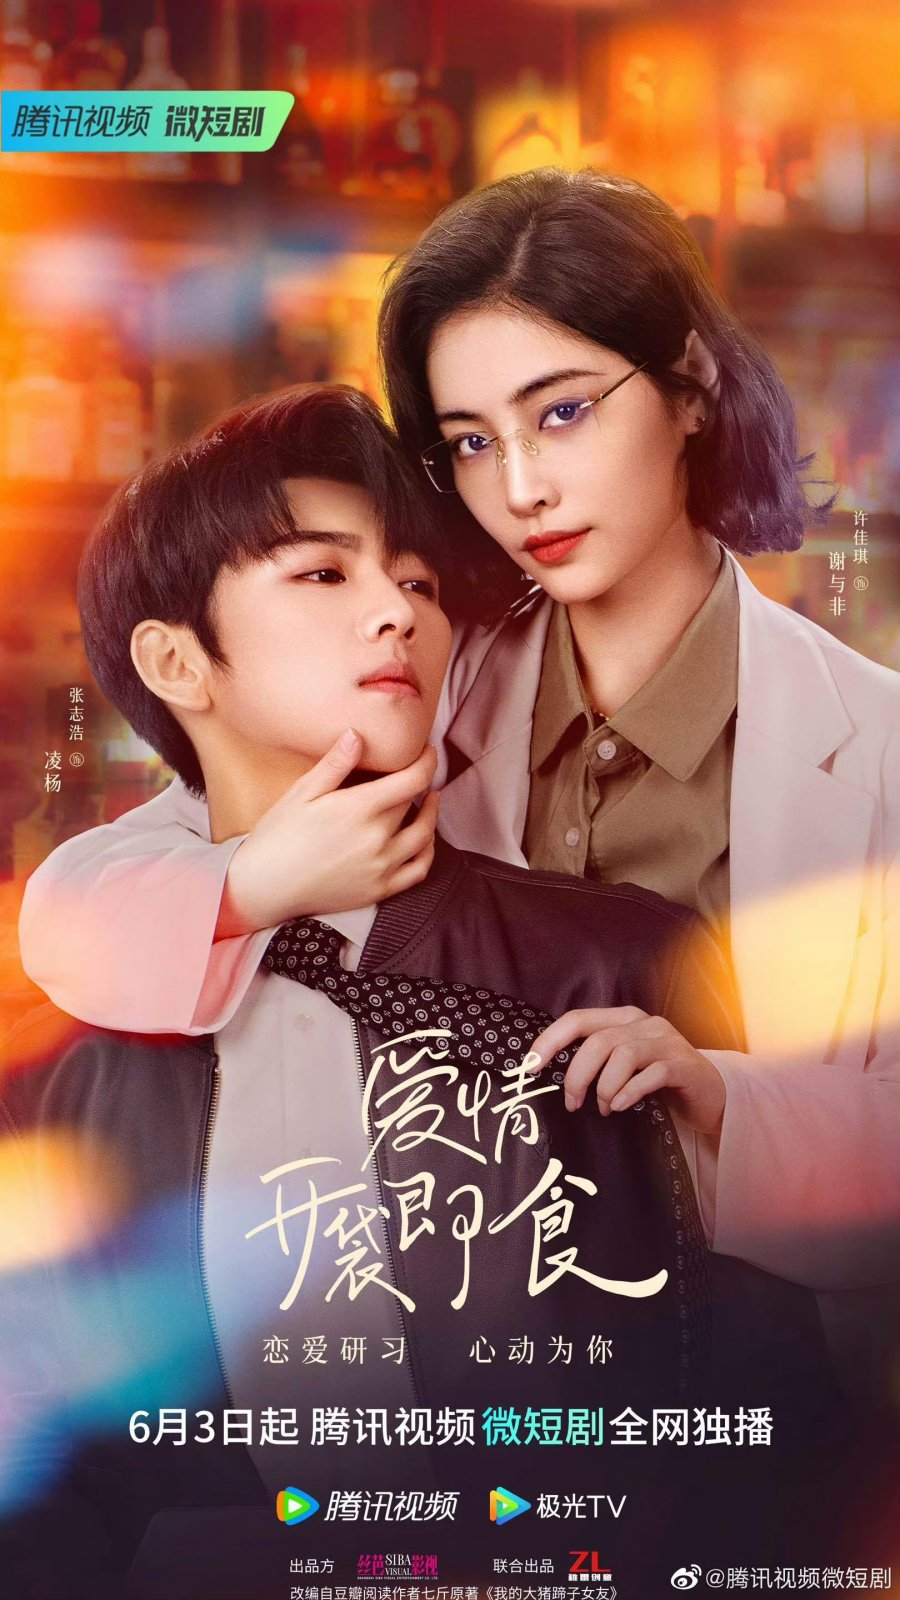 ดูหนังออนไลน์ฟรี ซีรี่ย์จีน Let’s Date, Professor Xie (2023) ทฤษฎีรักฉันและเธอ ซับไทย (จบ)